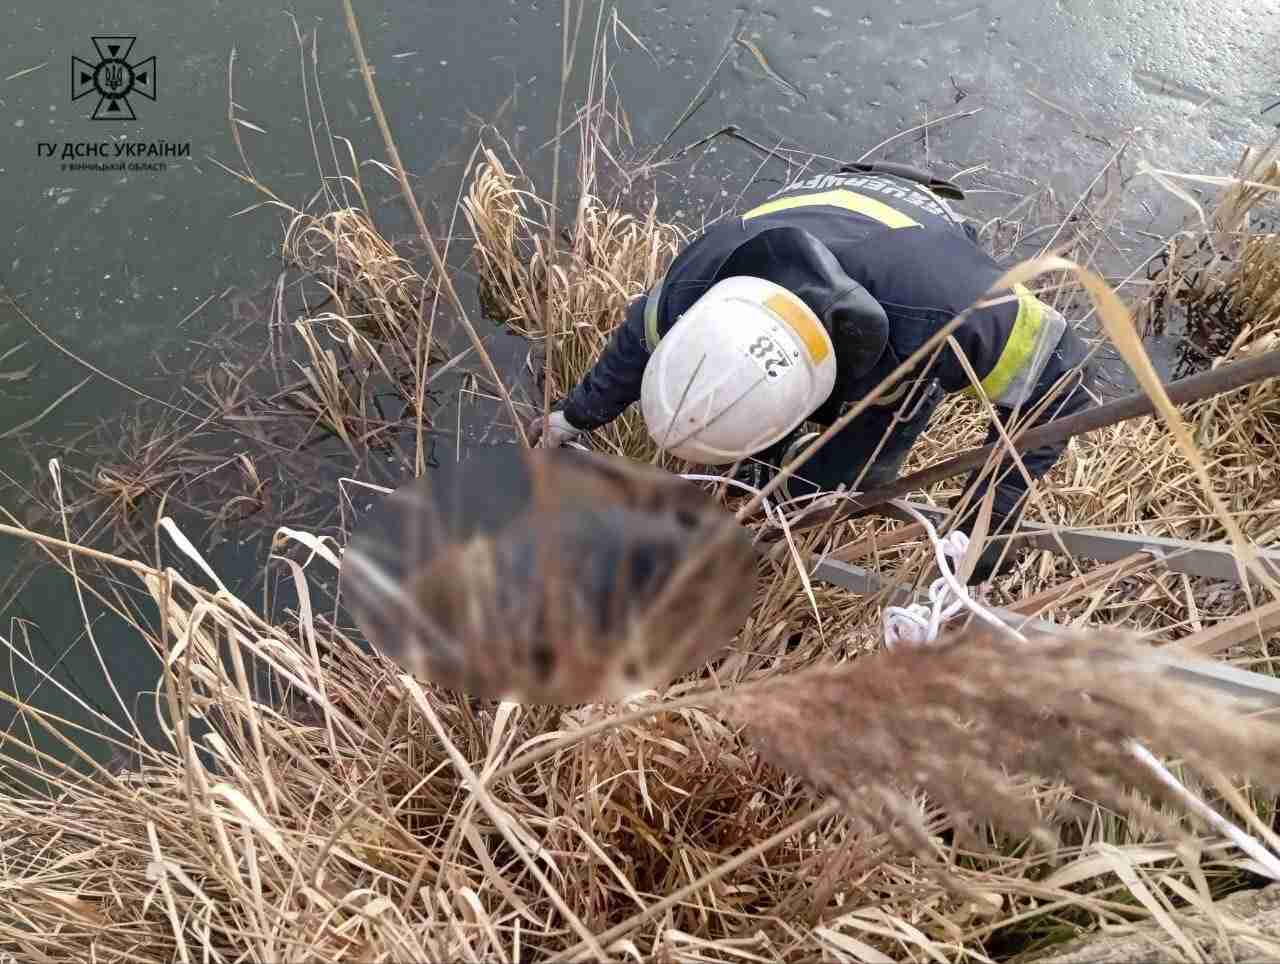 Рятувальники дістали з водойми тіло чоловіка, якого розшукували на Вінниччині ще минулого року (ФОТО)